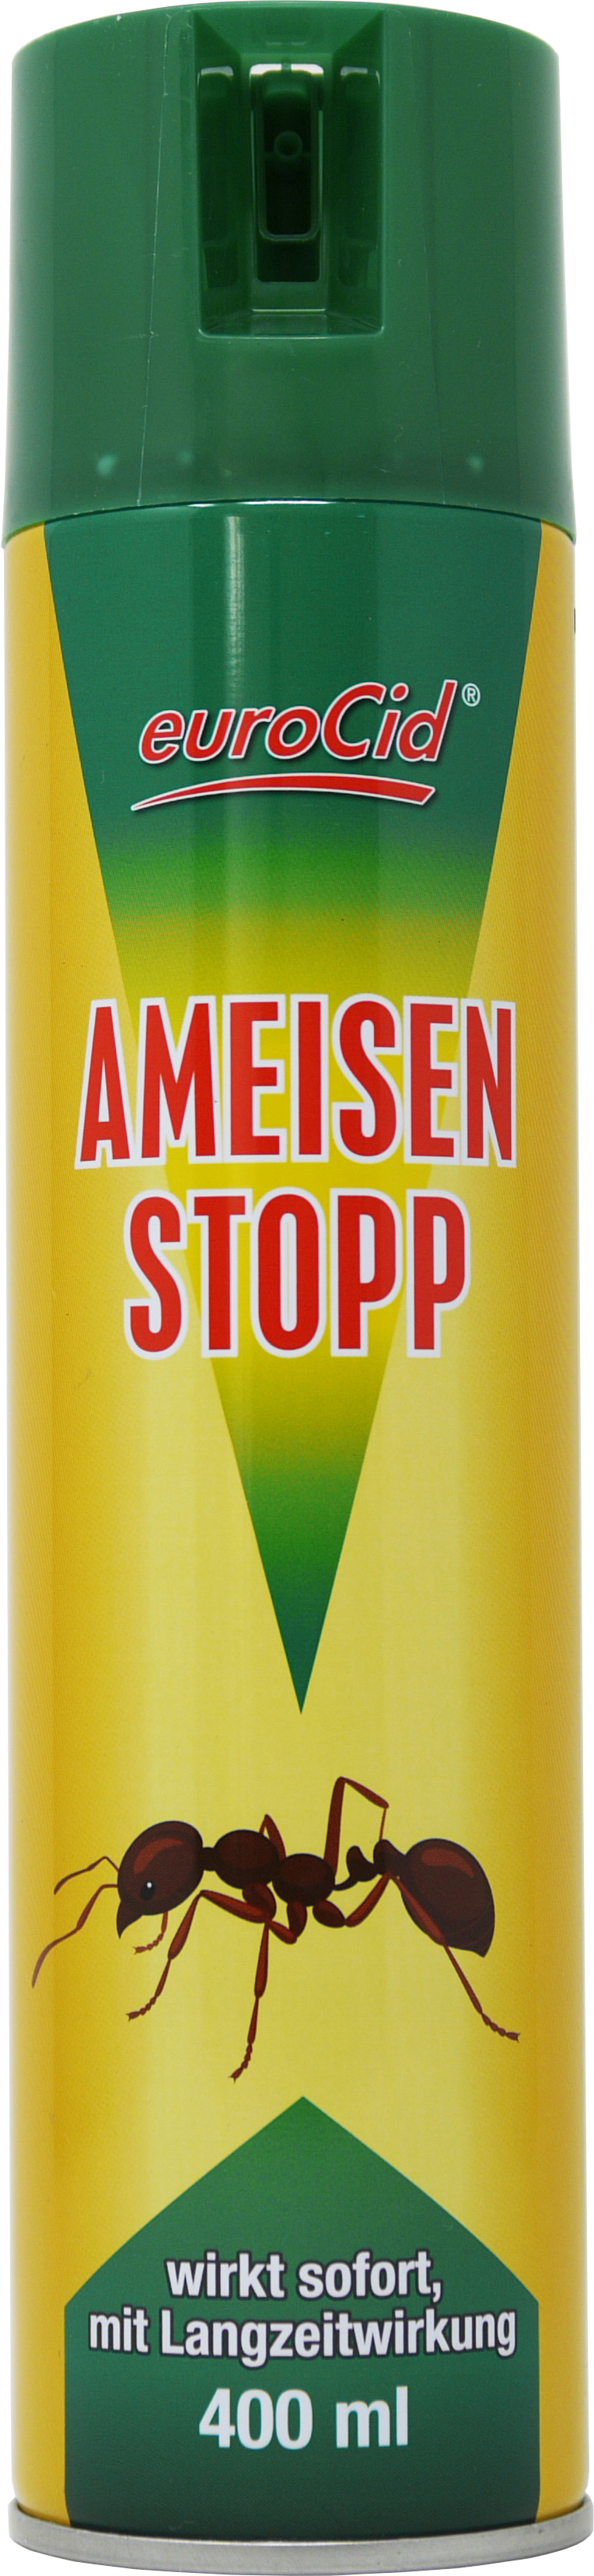 02191 - anti stop spray 300 ml